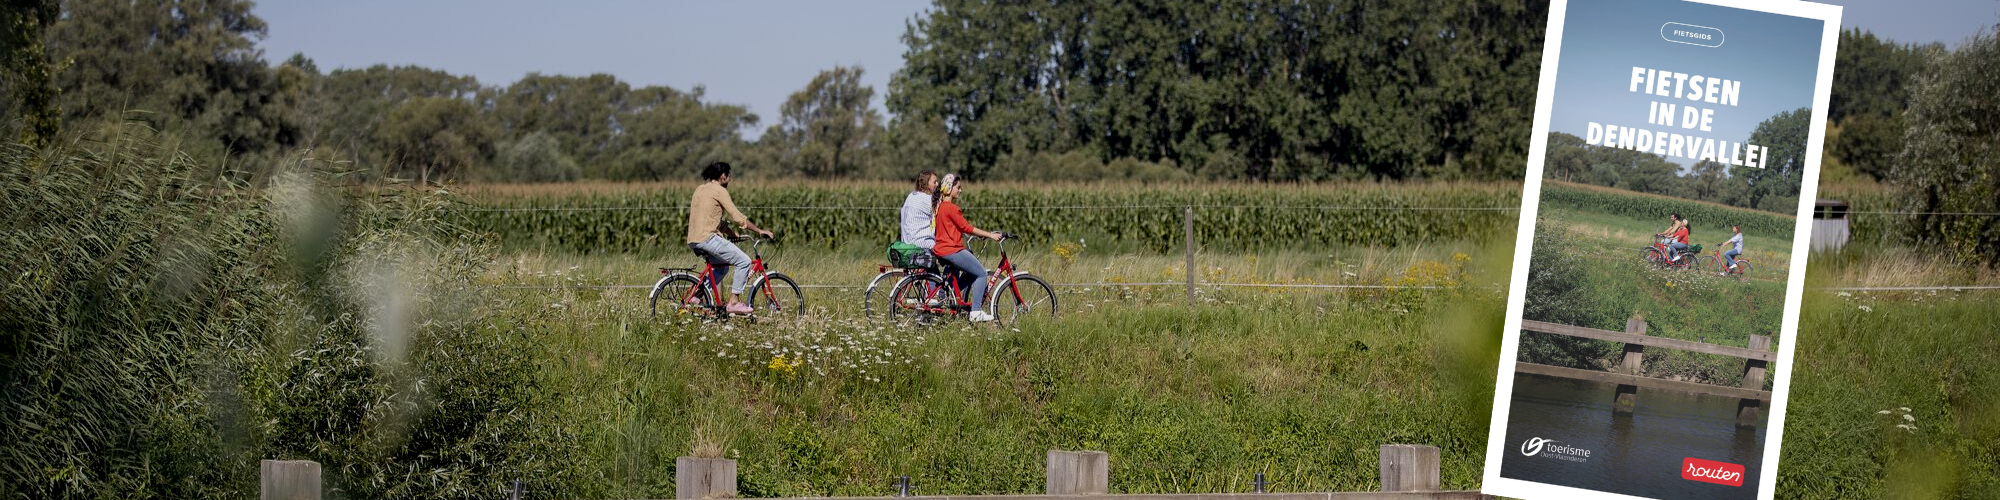 Nieuwe fietsgids Fietsen in de Dendervallei